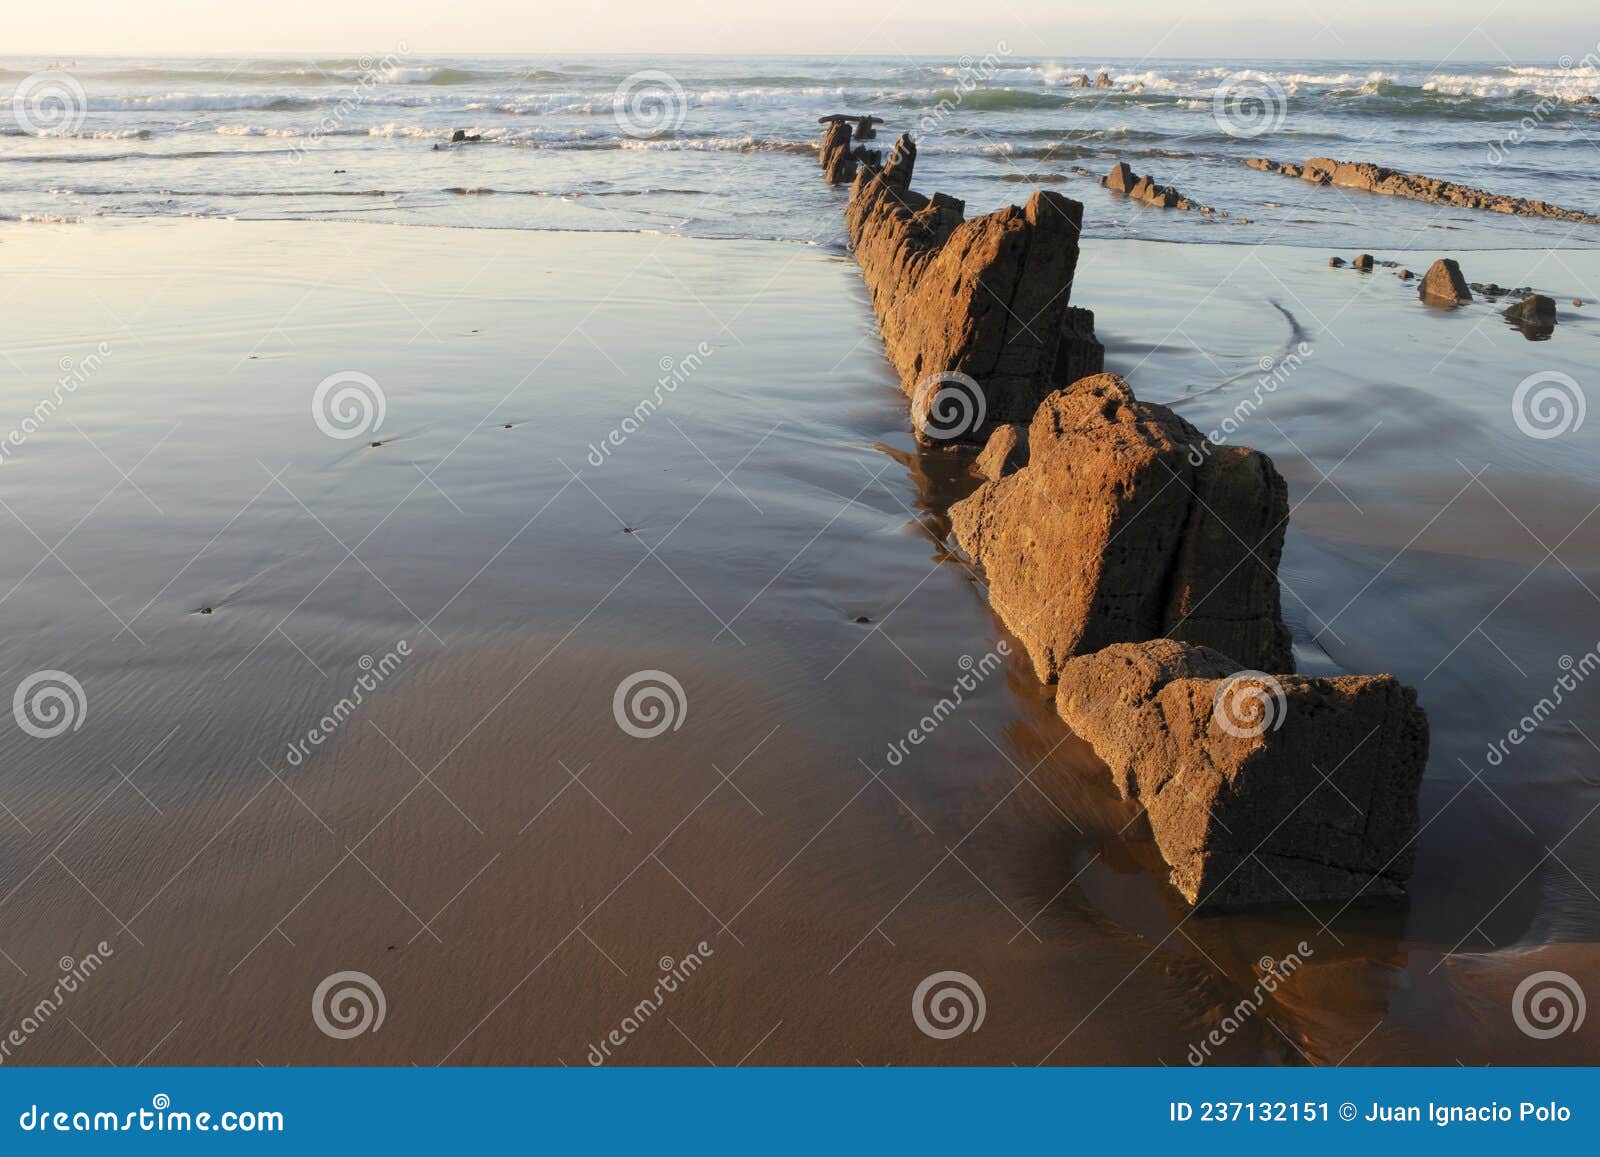 rocas en la playa de sopelana, bizkaia